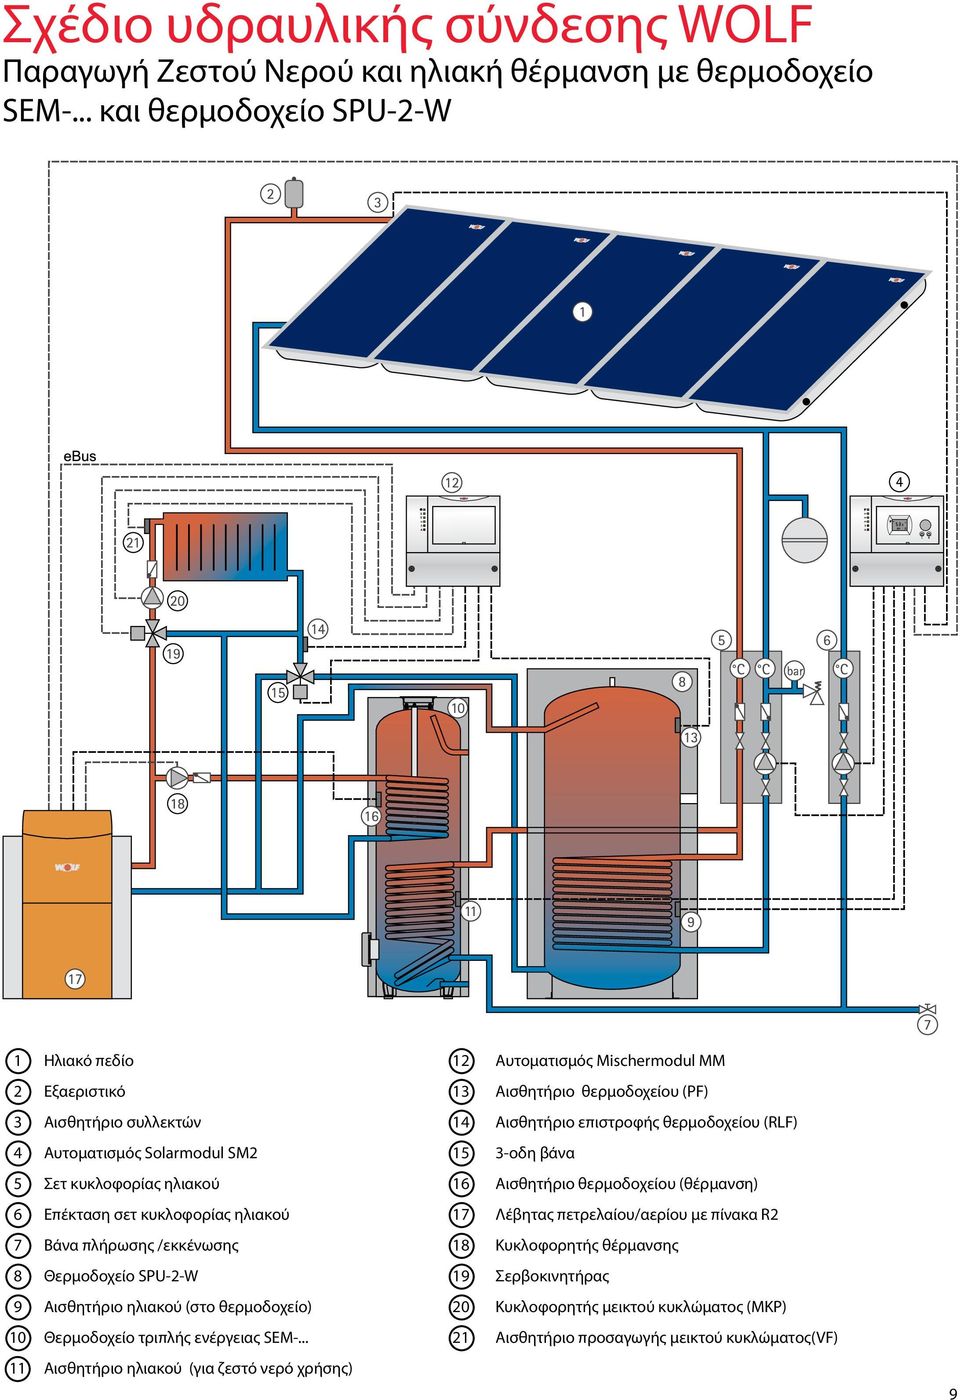 Αυτοματισμός Solarmodul SM2 15 3-οδη βάνα 5 Σετ κυκλοφορίας ηλιακού 16 Αισθητήριο θερμοδoχείου (θέρμανση) 6 Επέκταση σετ κυκλοφορίας ηλιακού 17 Λέβητας πετρελαίου/αερίου με πίνακα R2 7 Βάνα